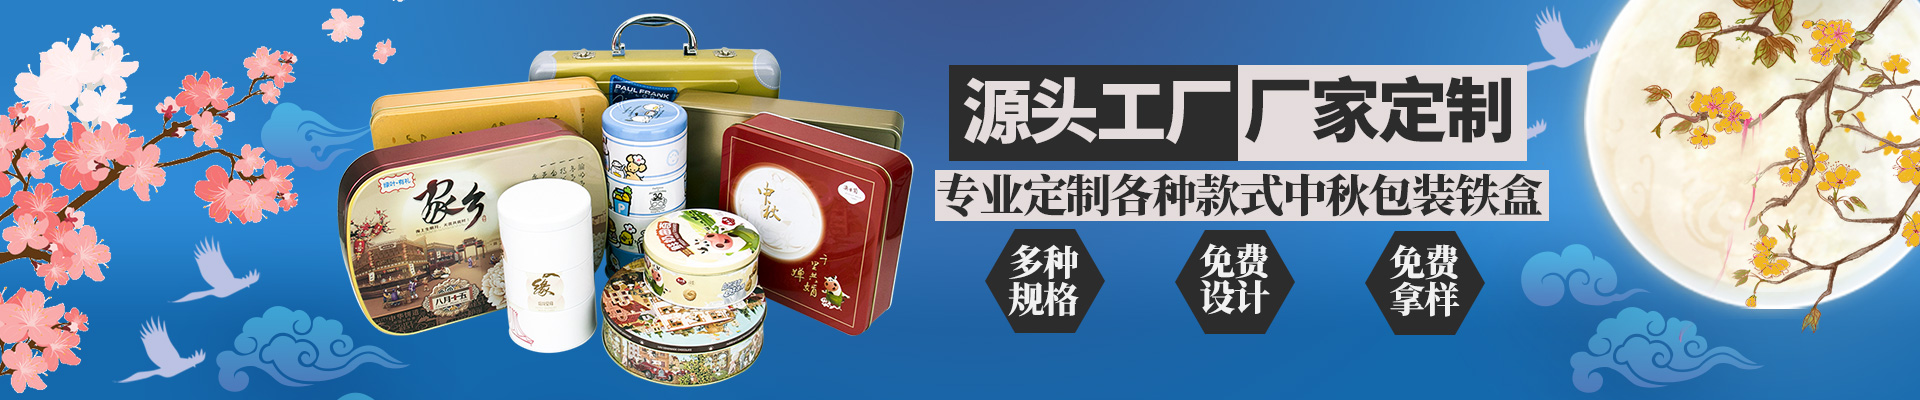 月饼铁盒月饼环球app(中国)有限公司官网小横图